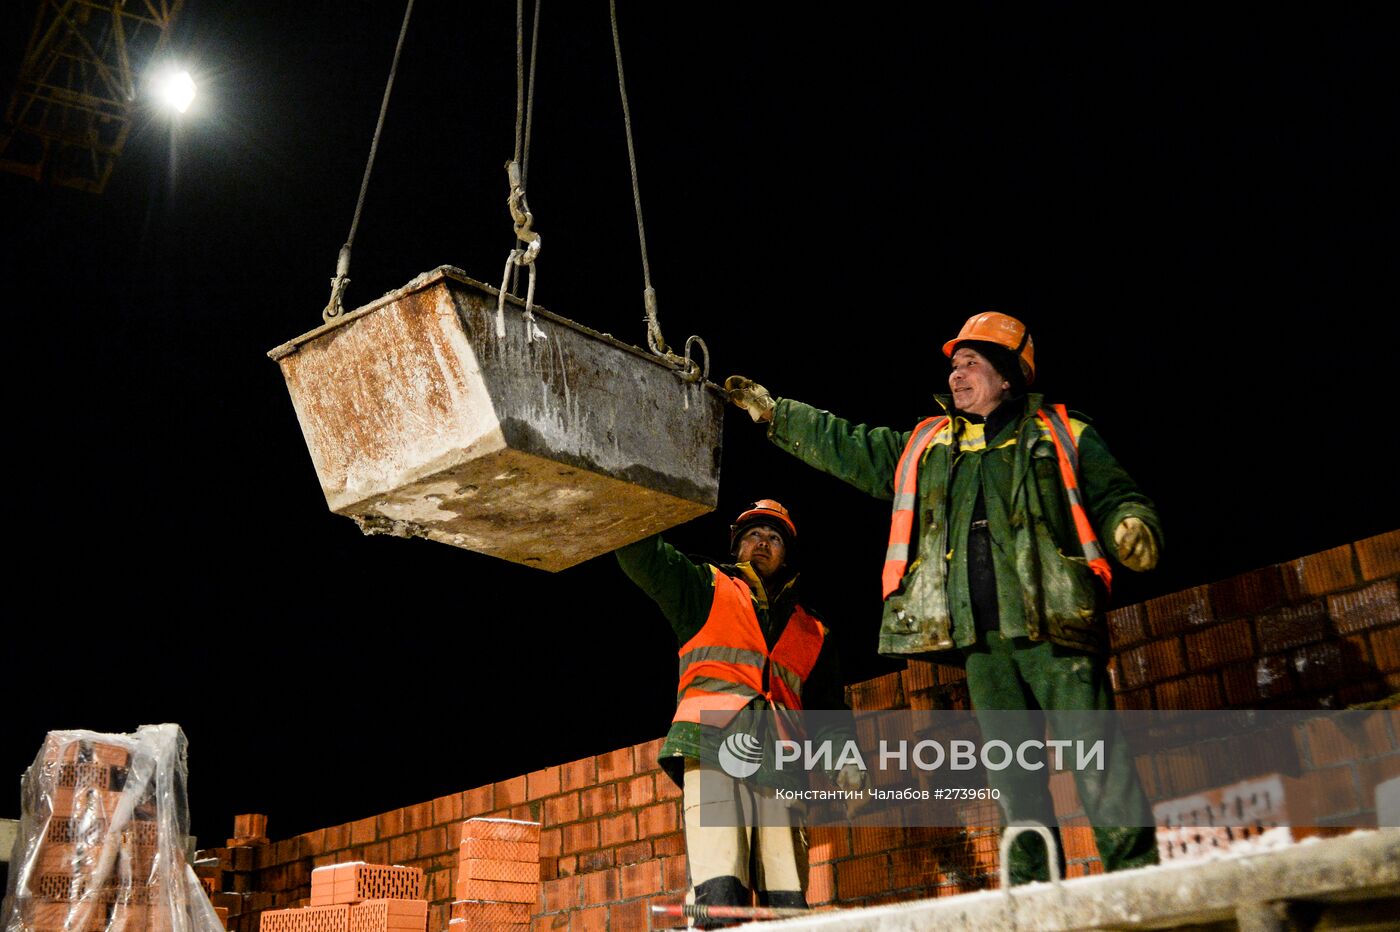 Строительство жилых комплексов в Новгородской области